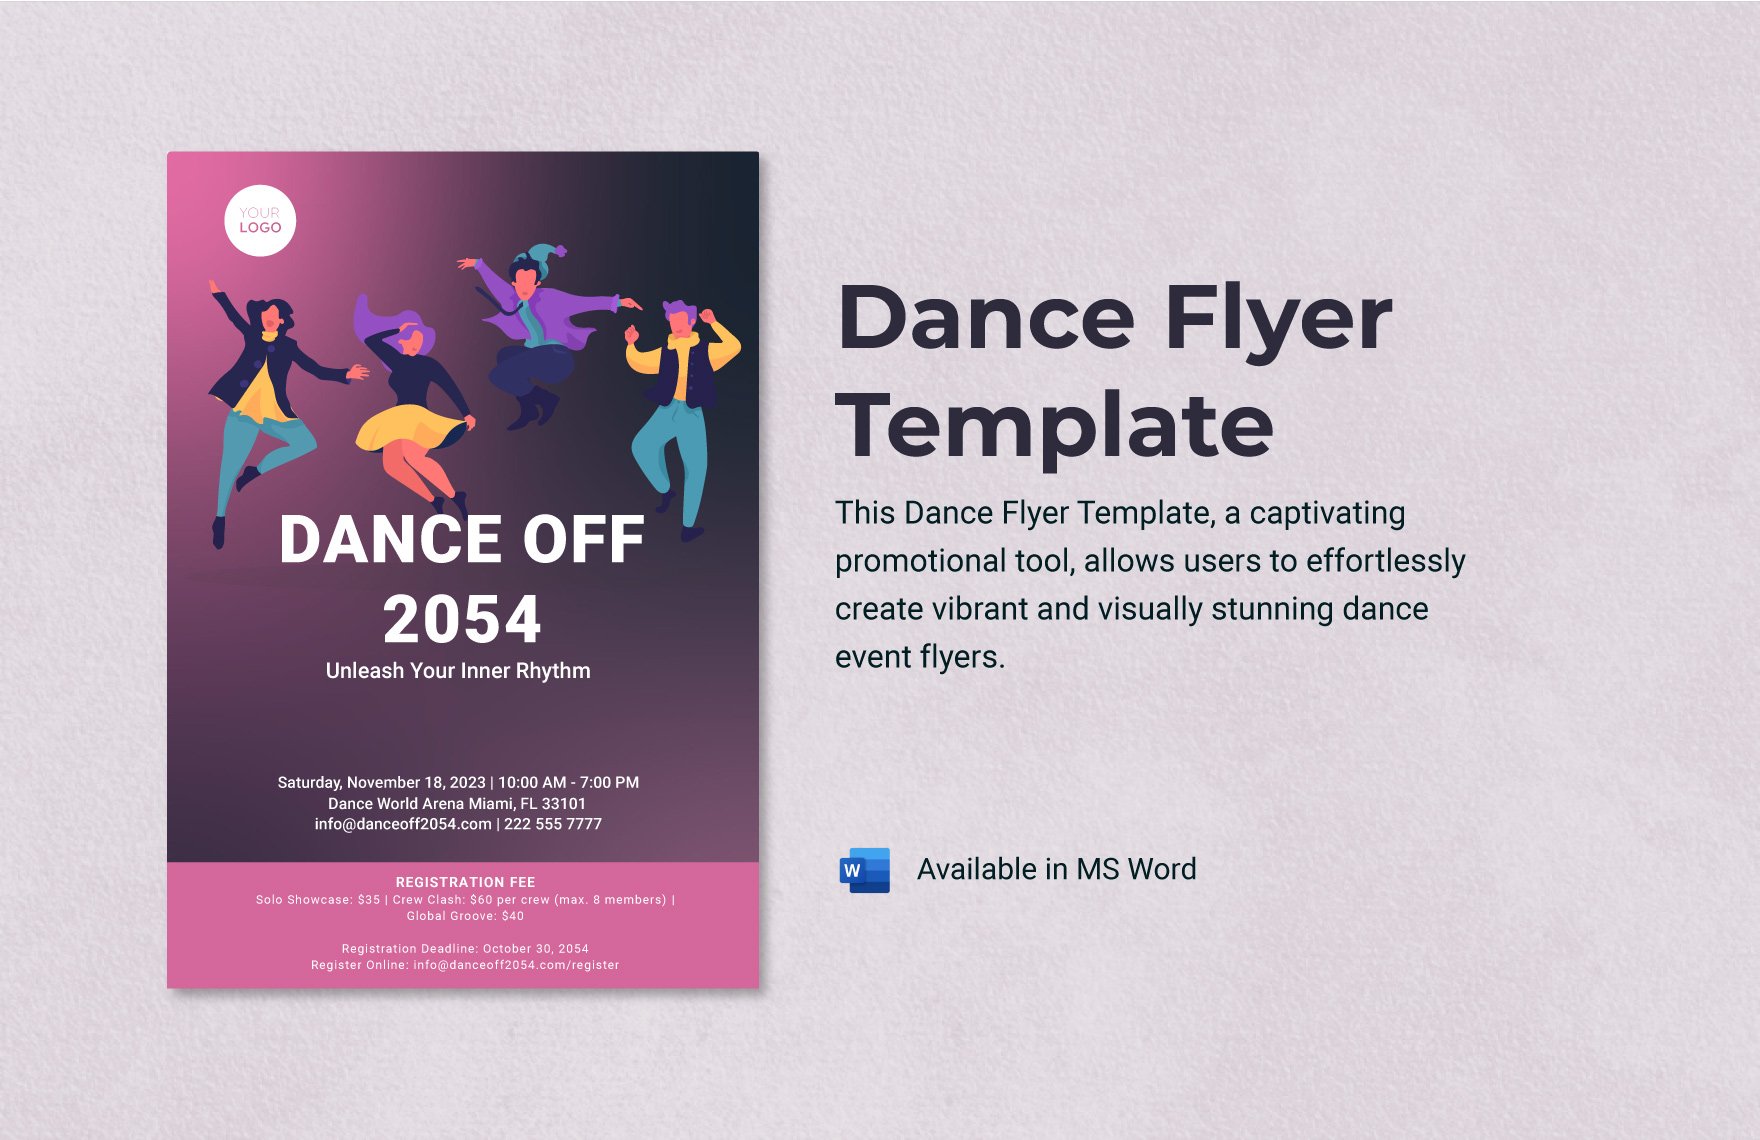 Dance Flyer Template